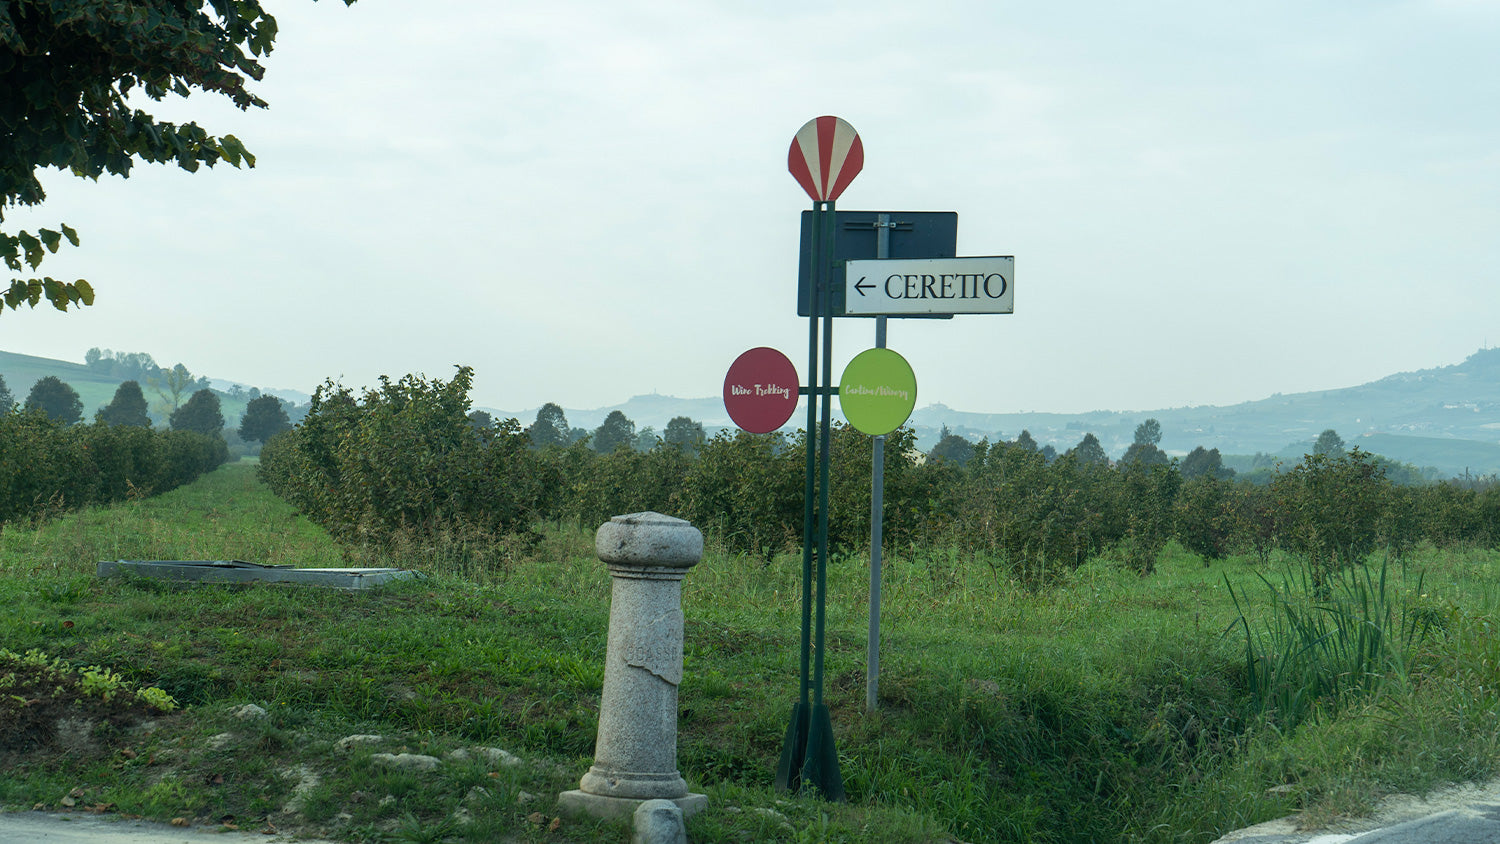 アルバからワイナリーに向かう途中には、チェレットのワイナリーを案内する道標が。